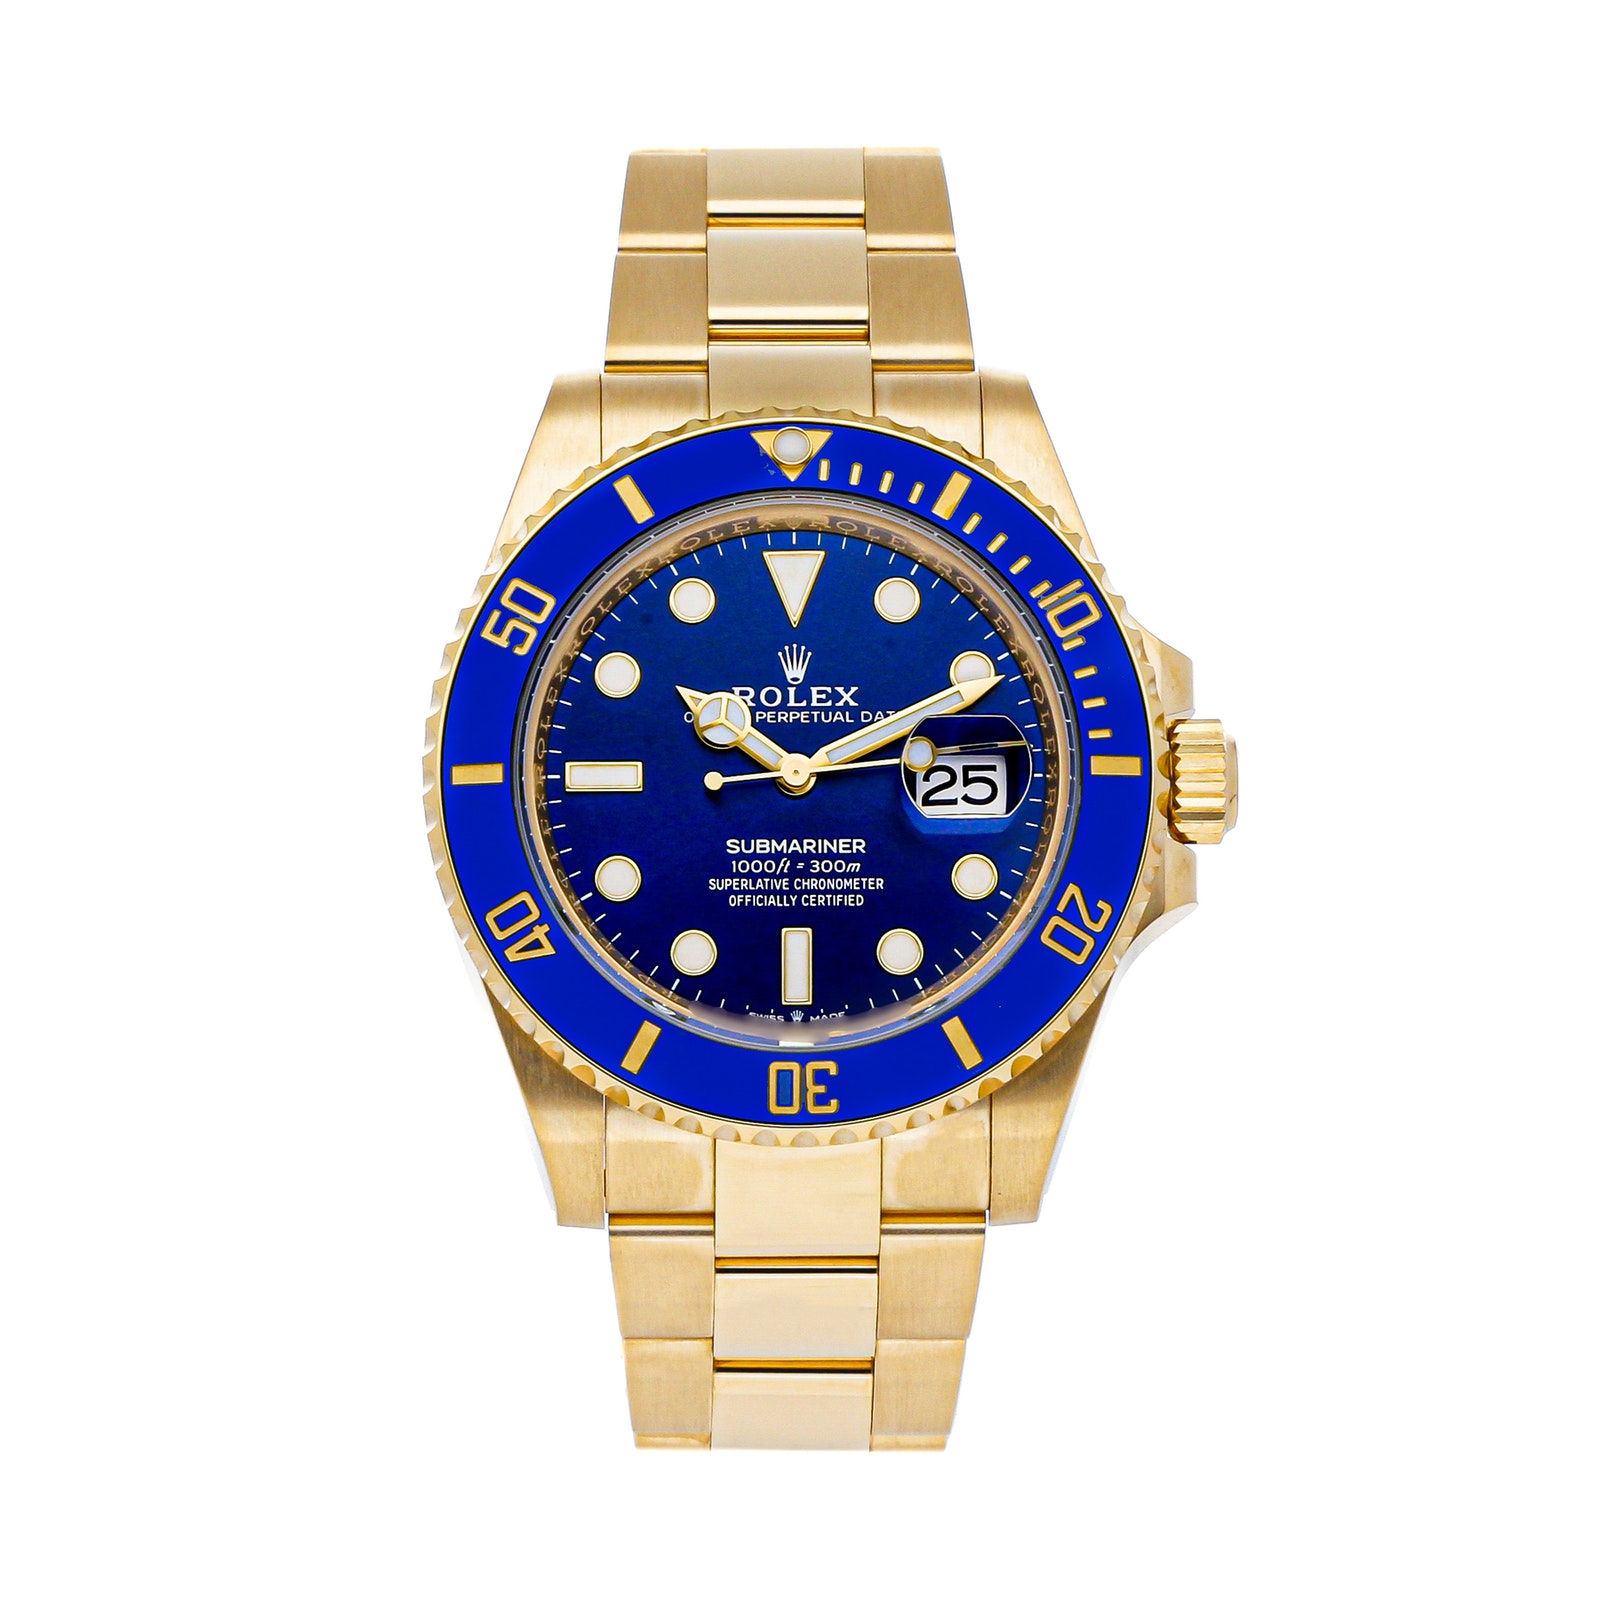 Rolex Submariner Date (126618LB) Market Price | WatchCharts